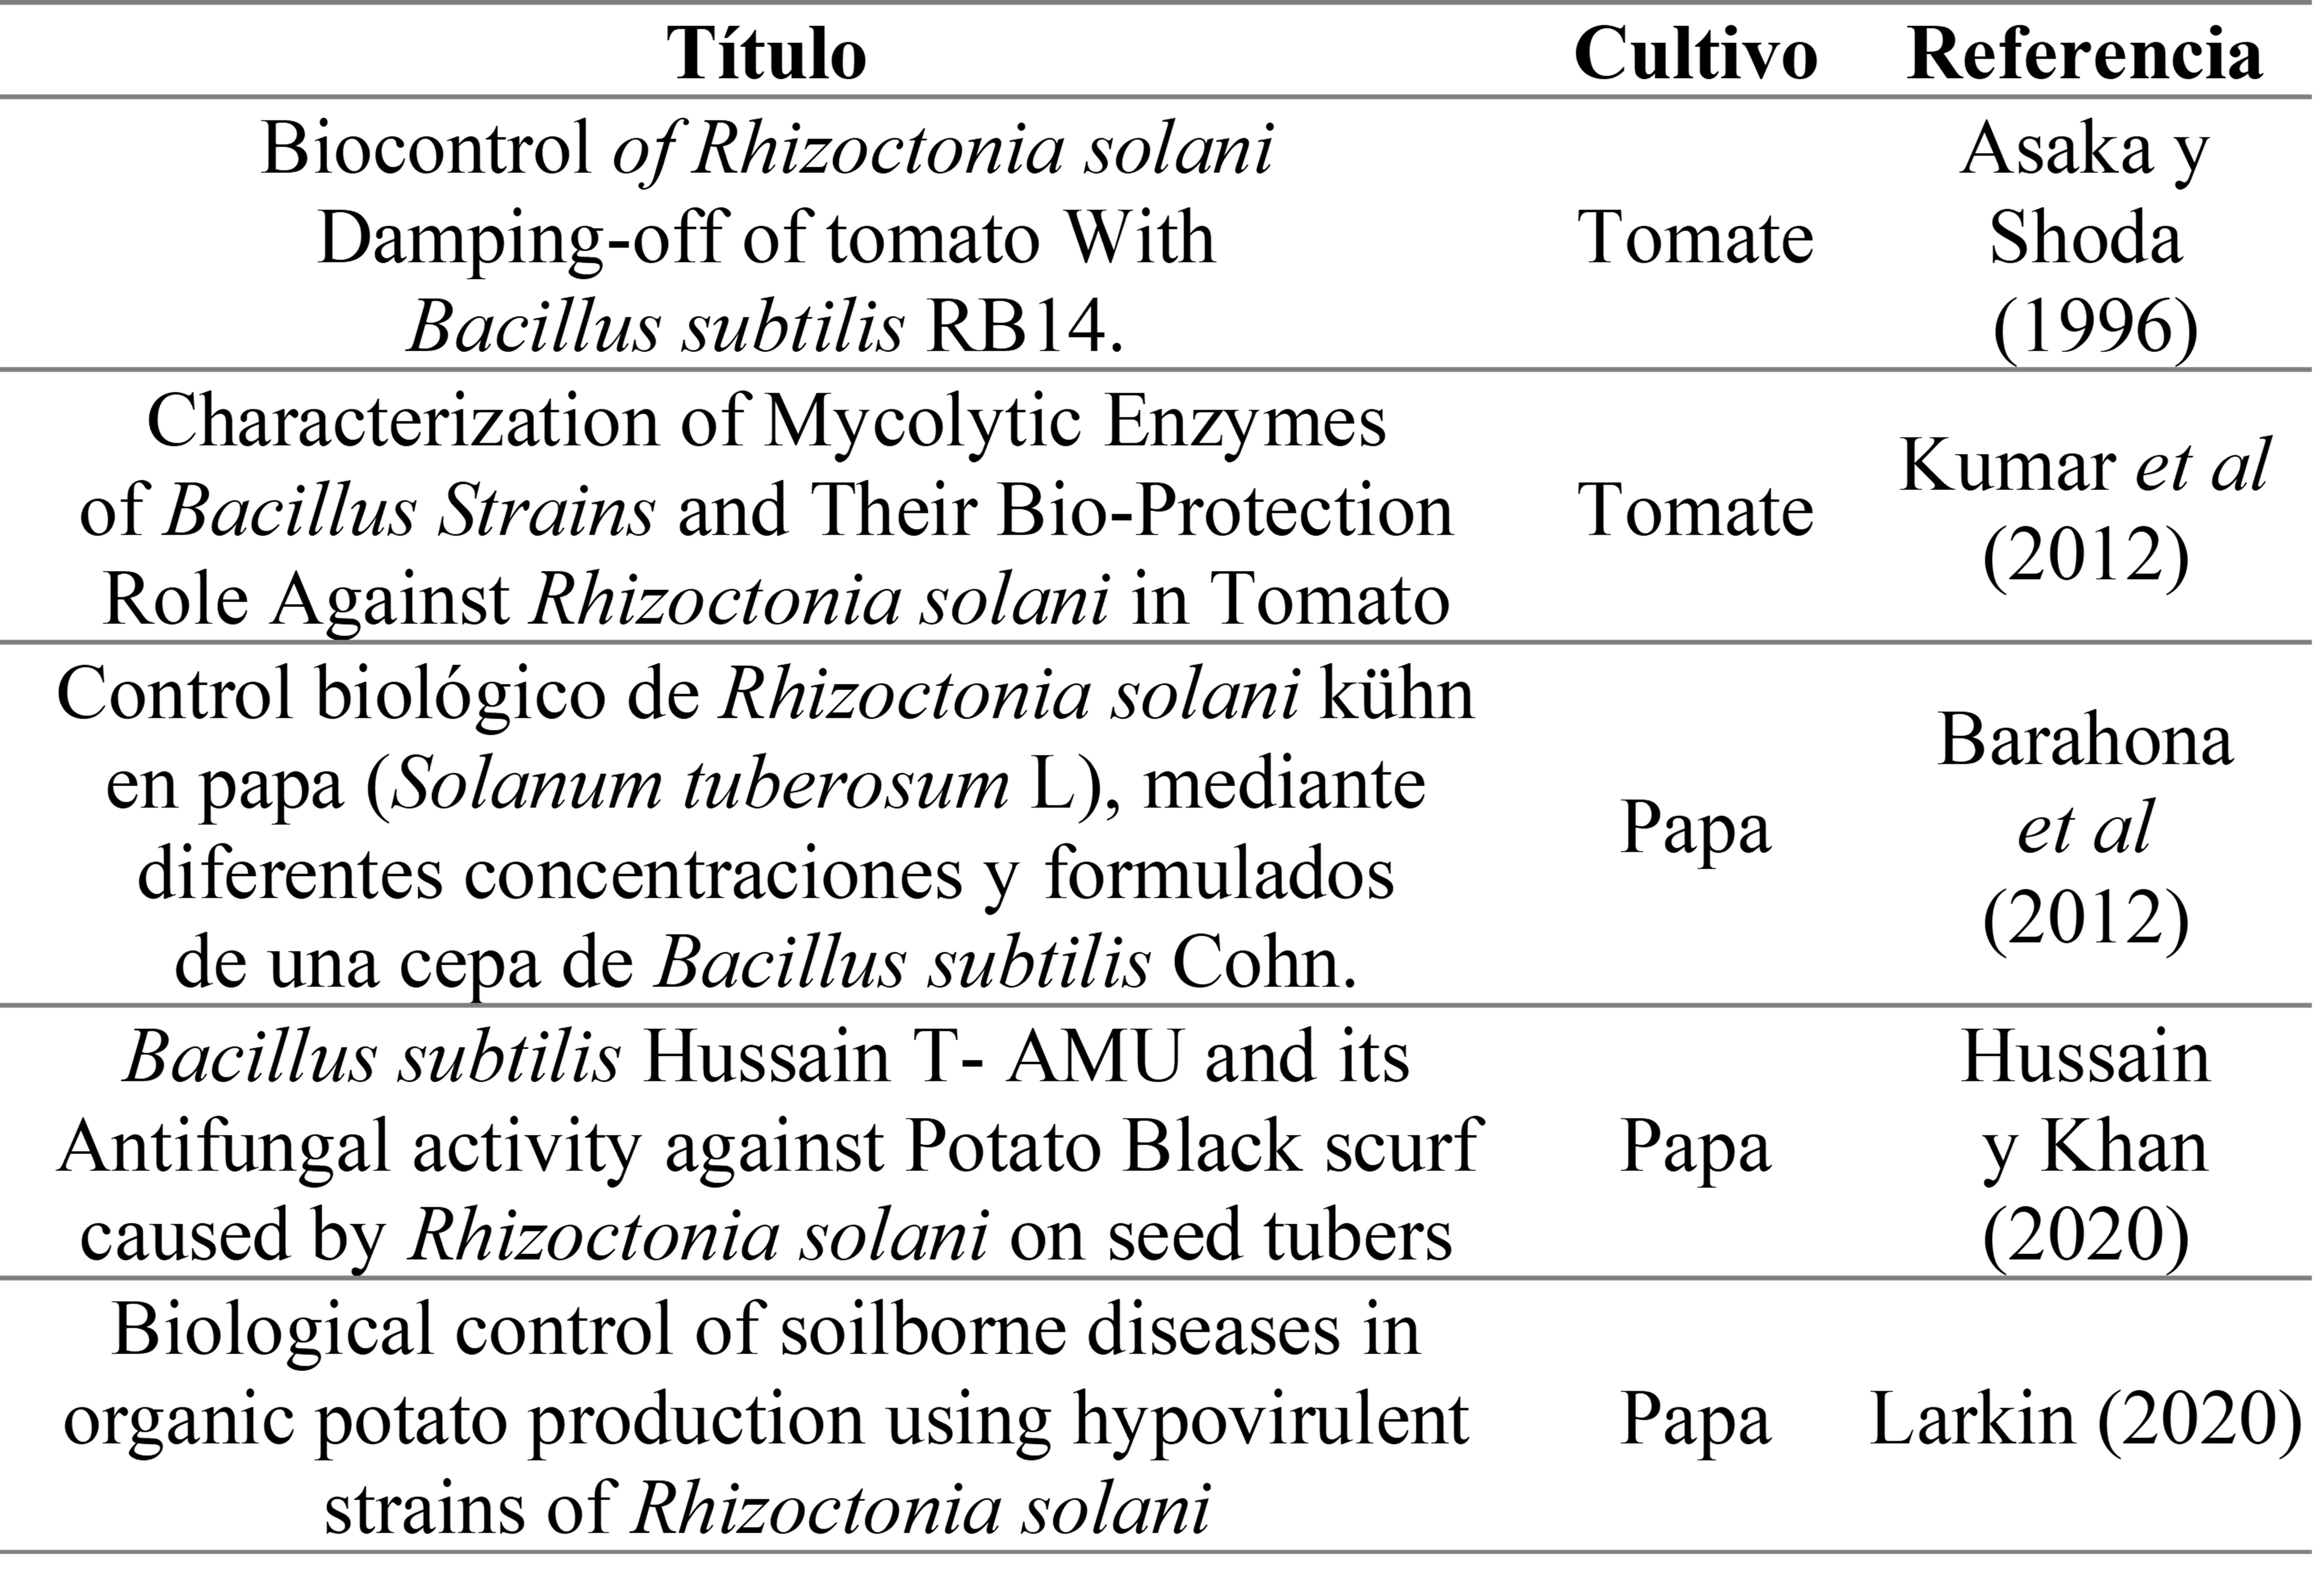 Tabla 2. Documentos sobre B. subtilis como antagonista de Rhizoctonia solani